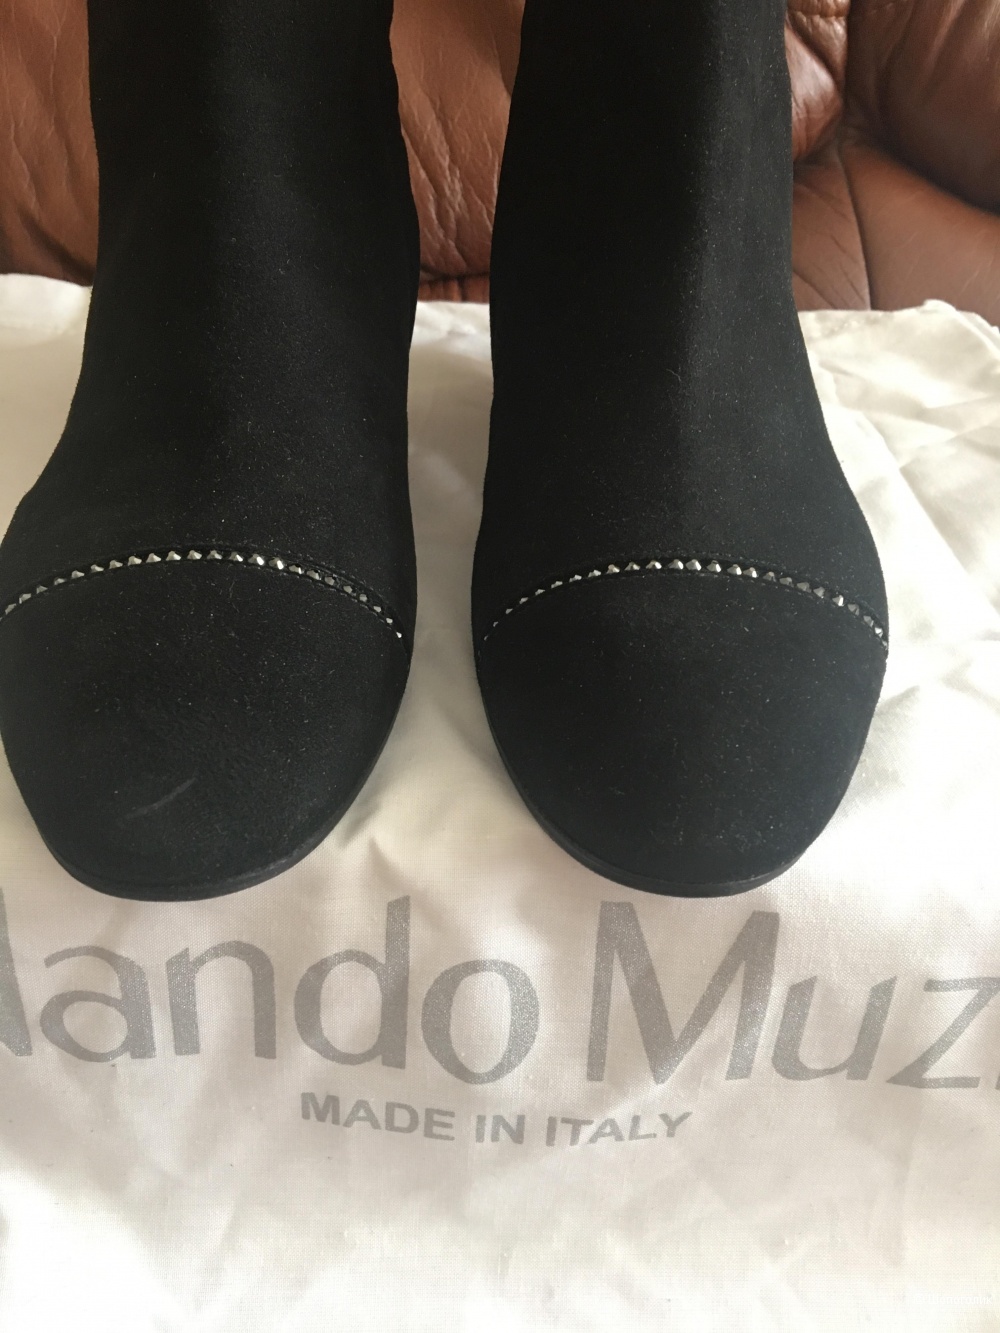 Ботинки Nando Muzi,размер 37,5